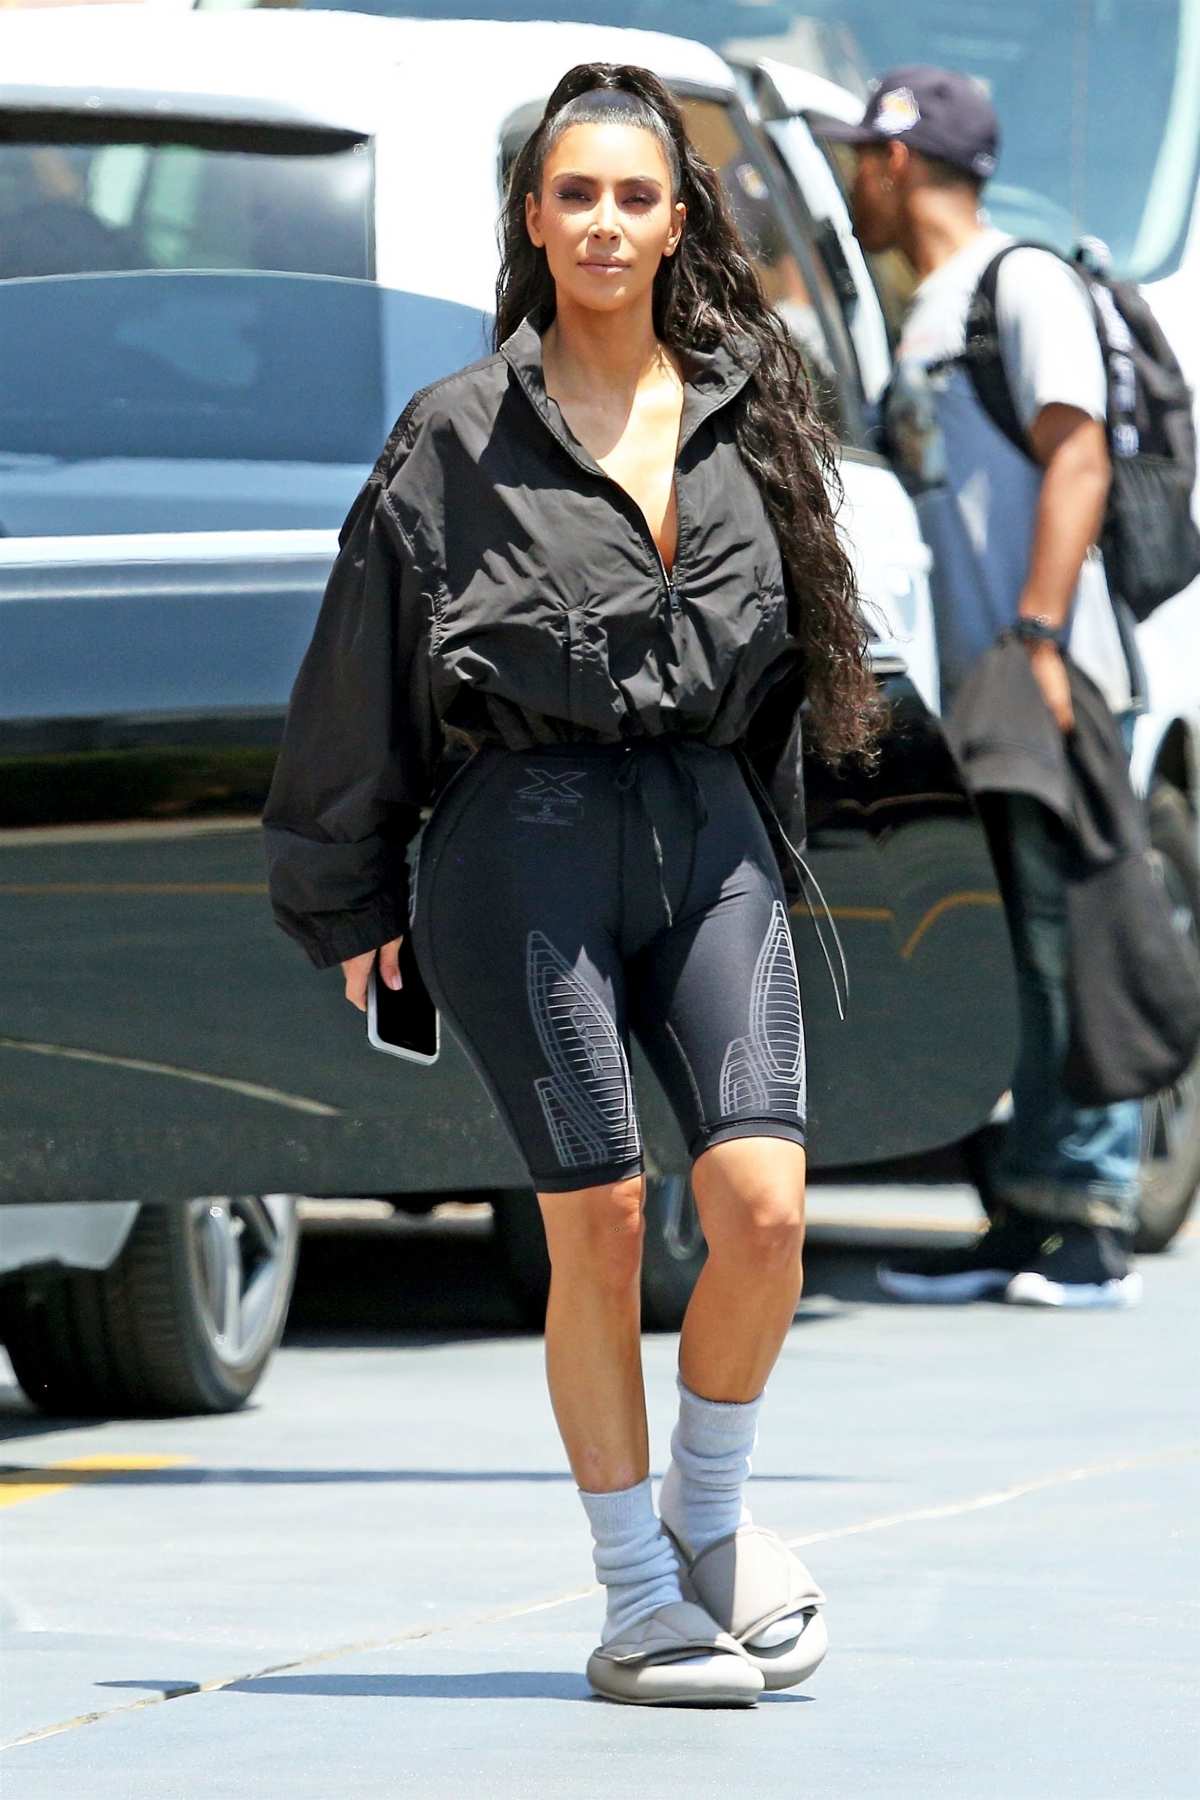 Kim Kardashian Yeezy With Socks: Details